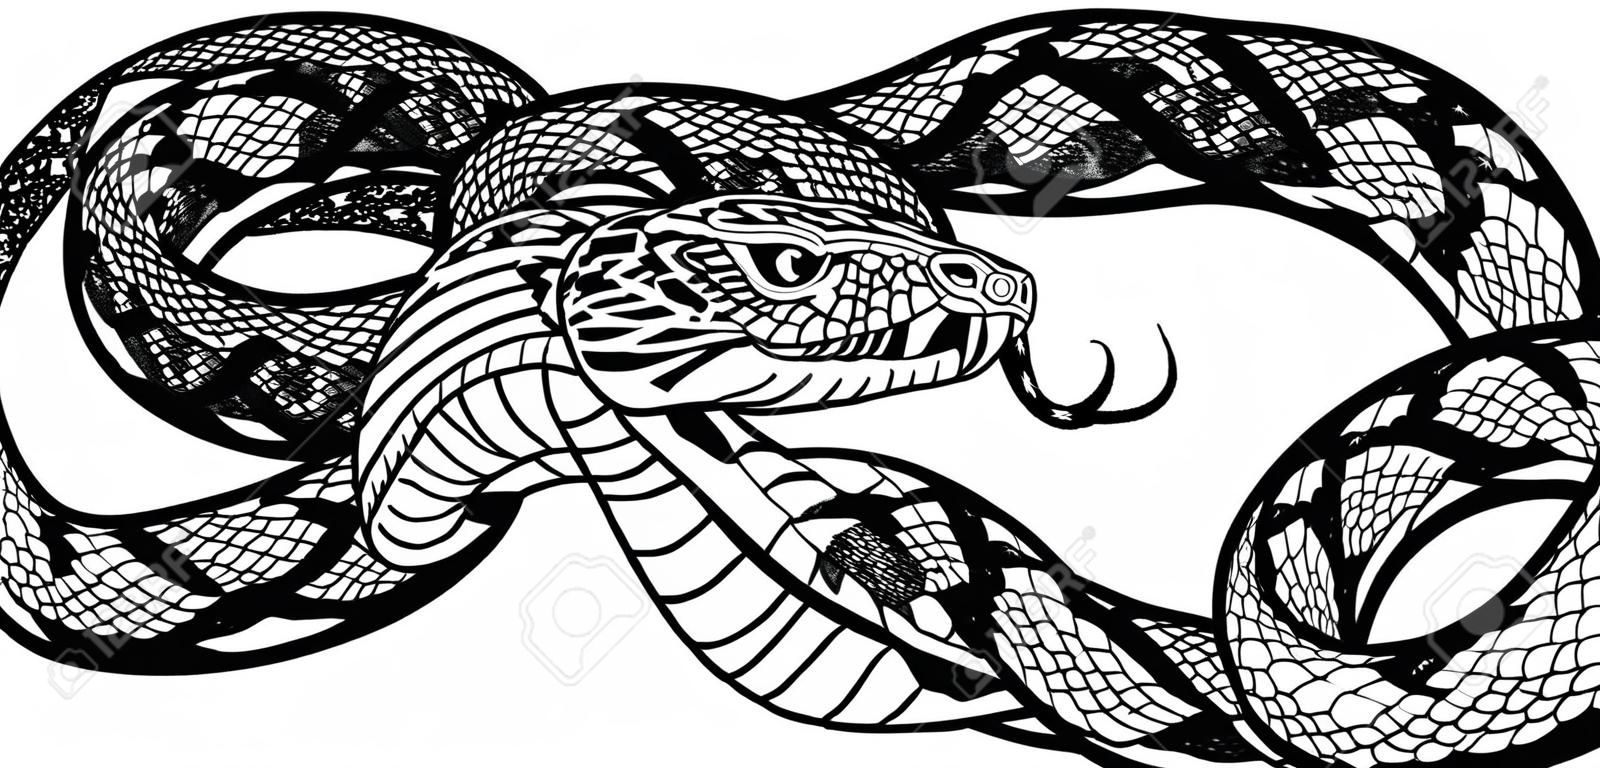 Serpente aggressivo arrotolato. Illustrazione vettoriale di stile tatuaggio in bianco e nero